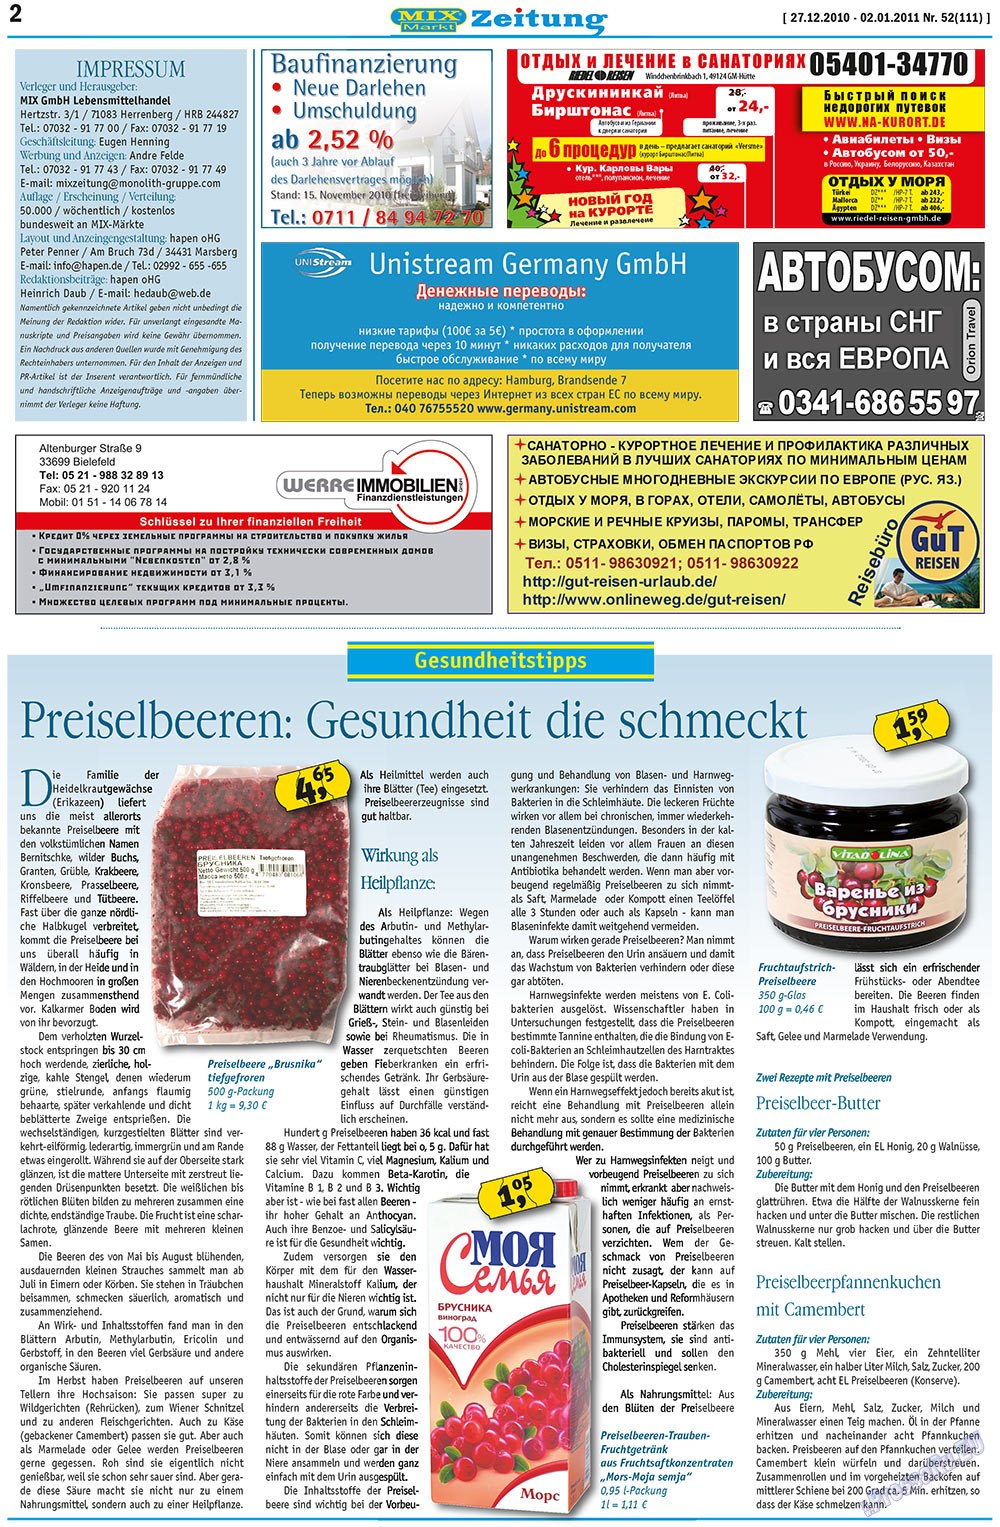 MIX-Markt Zeitung (газета). 2010 год, номер 52, стр. 2